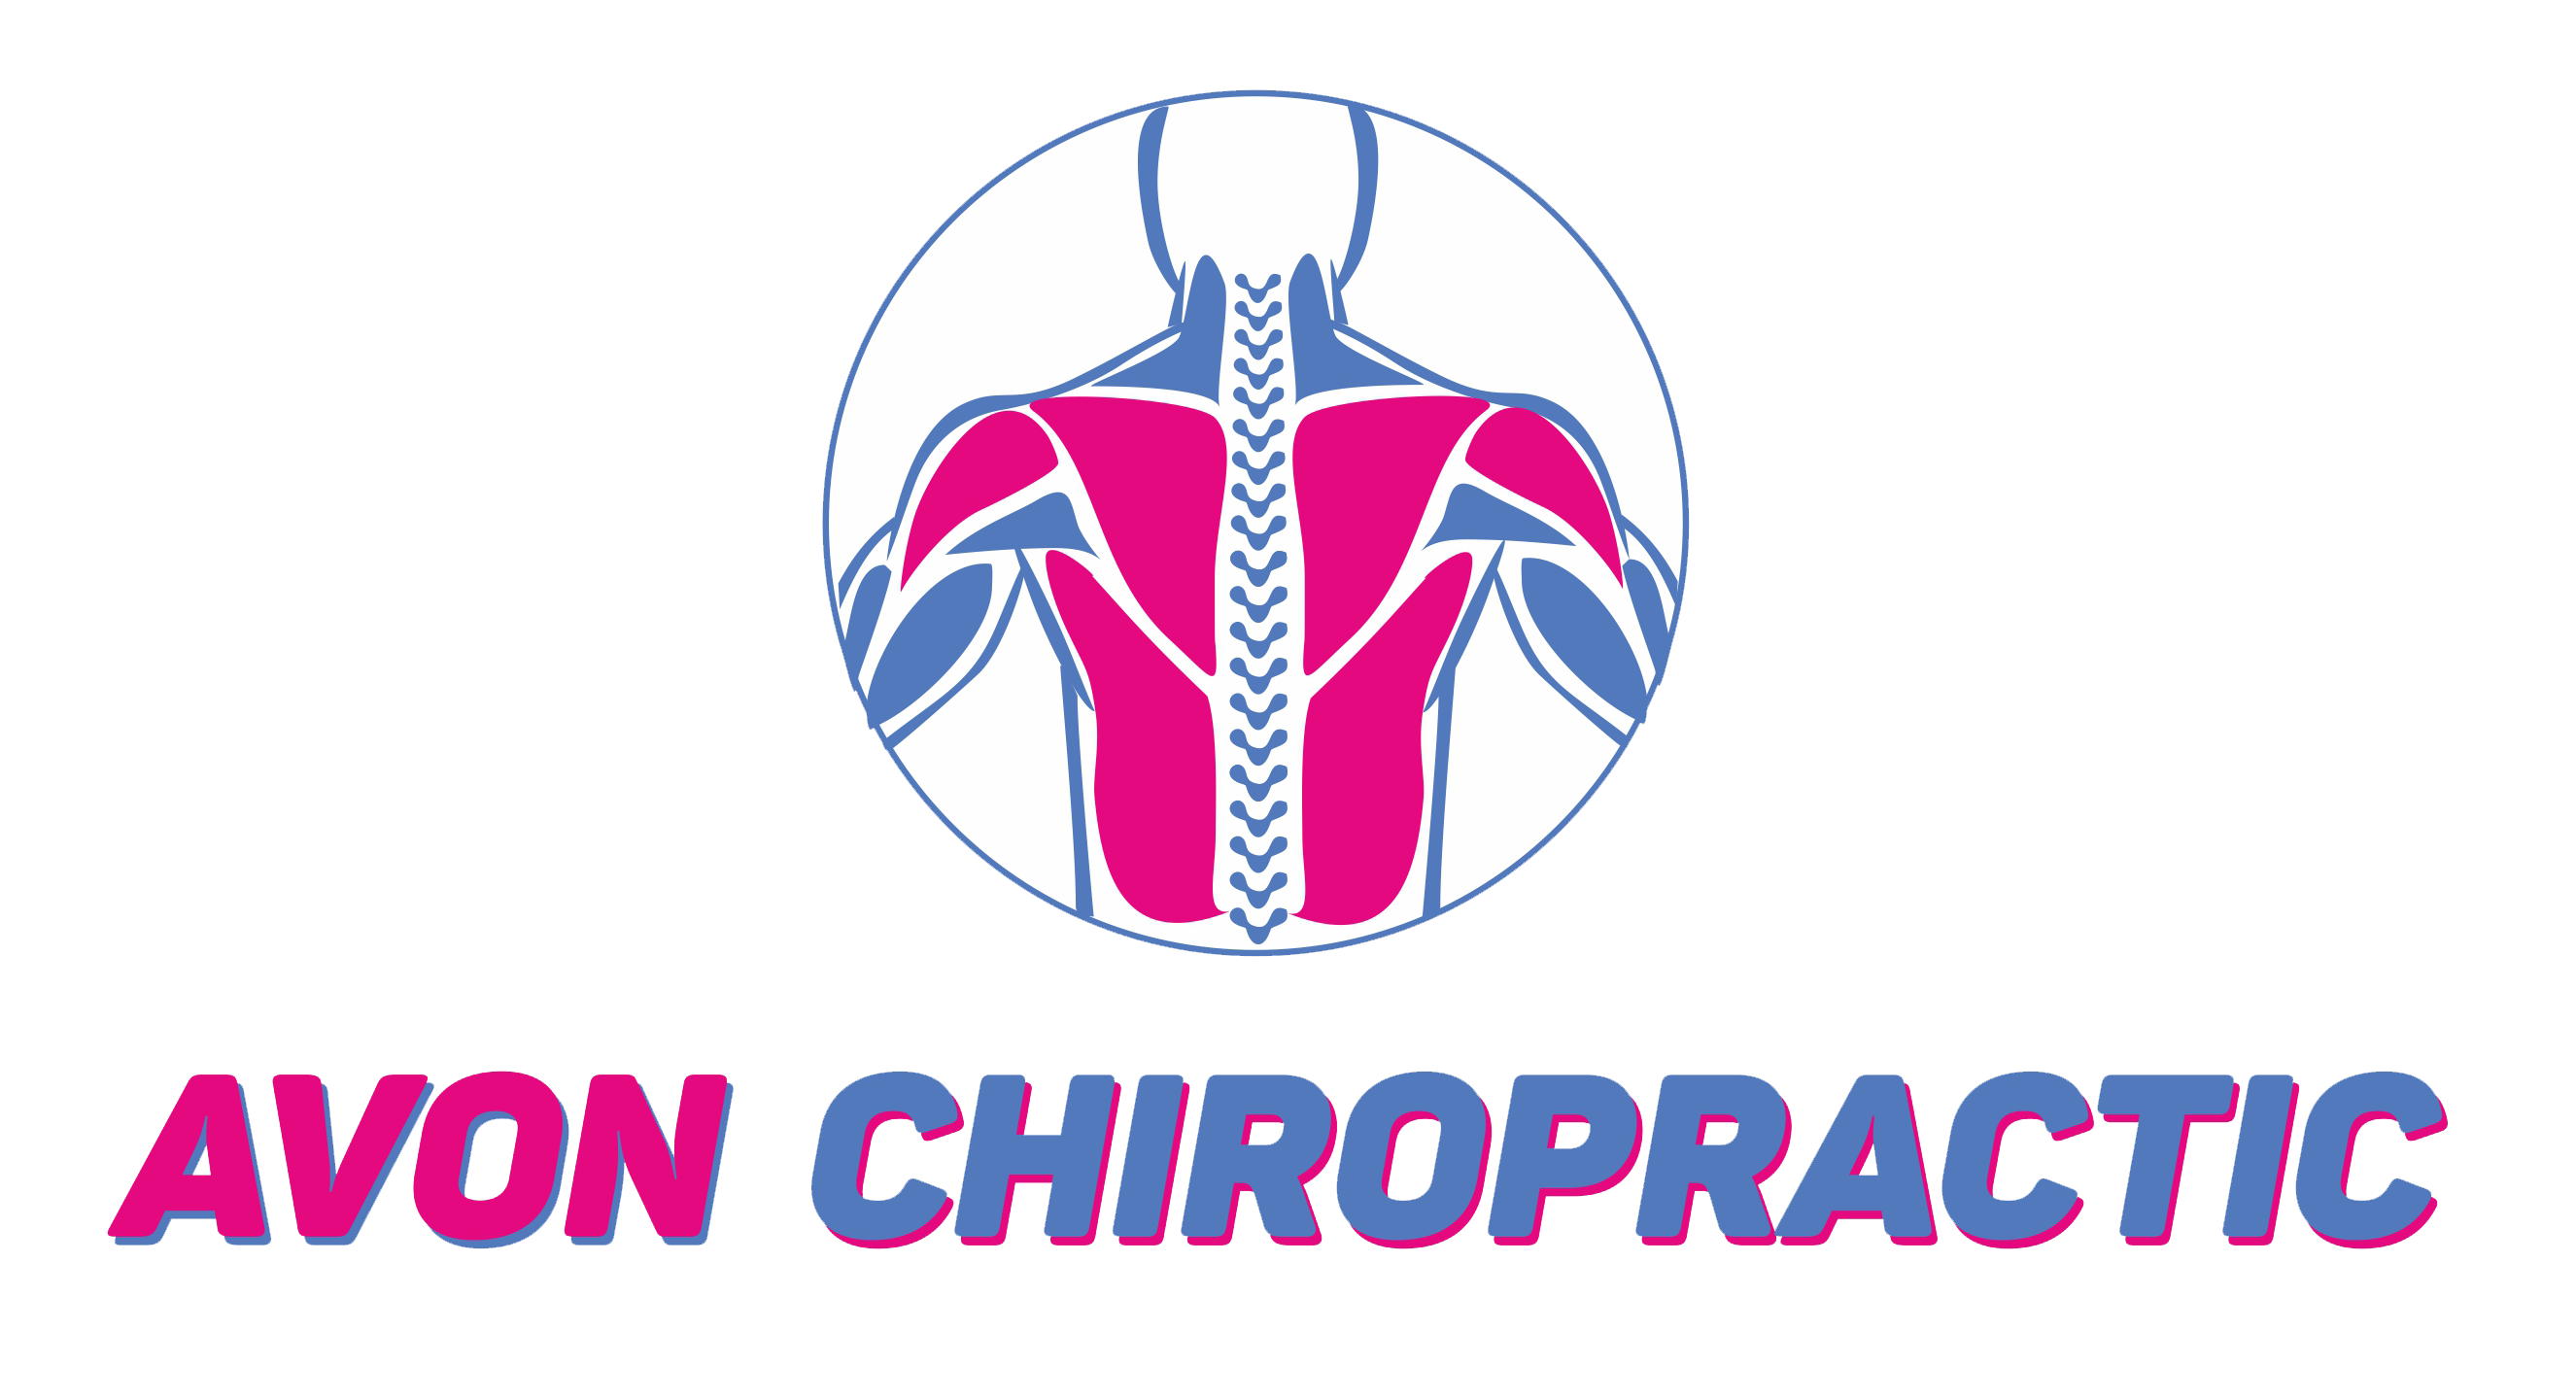 avon-chiropractic_logo.png